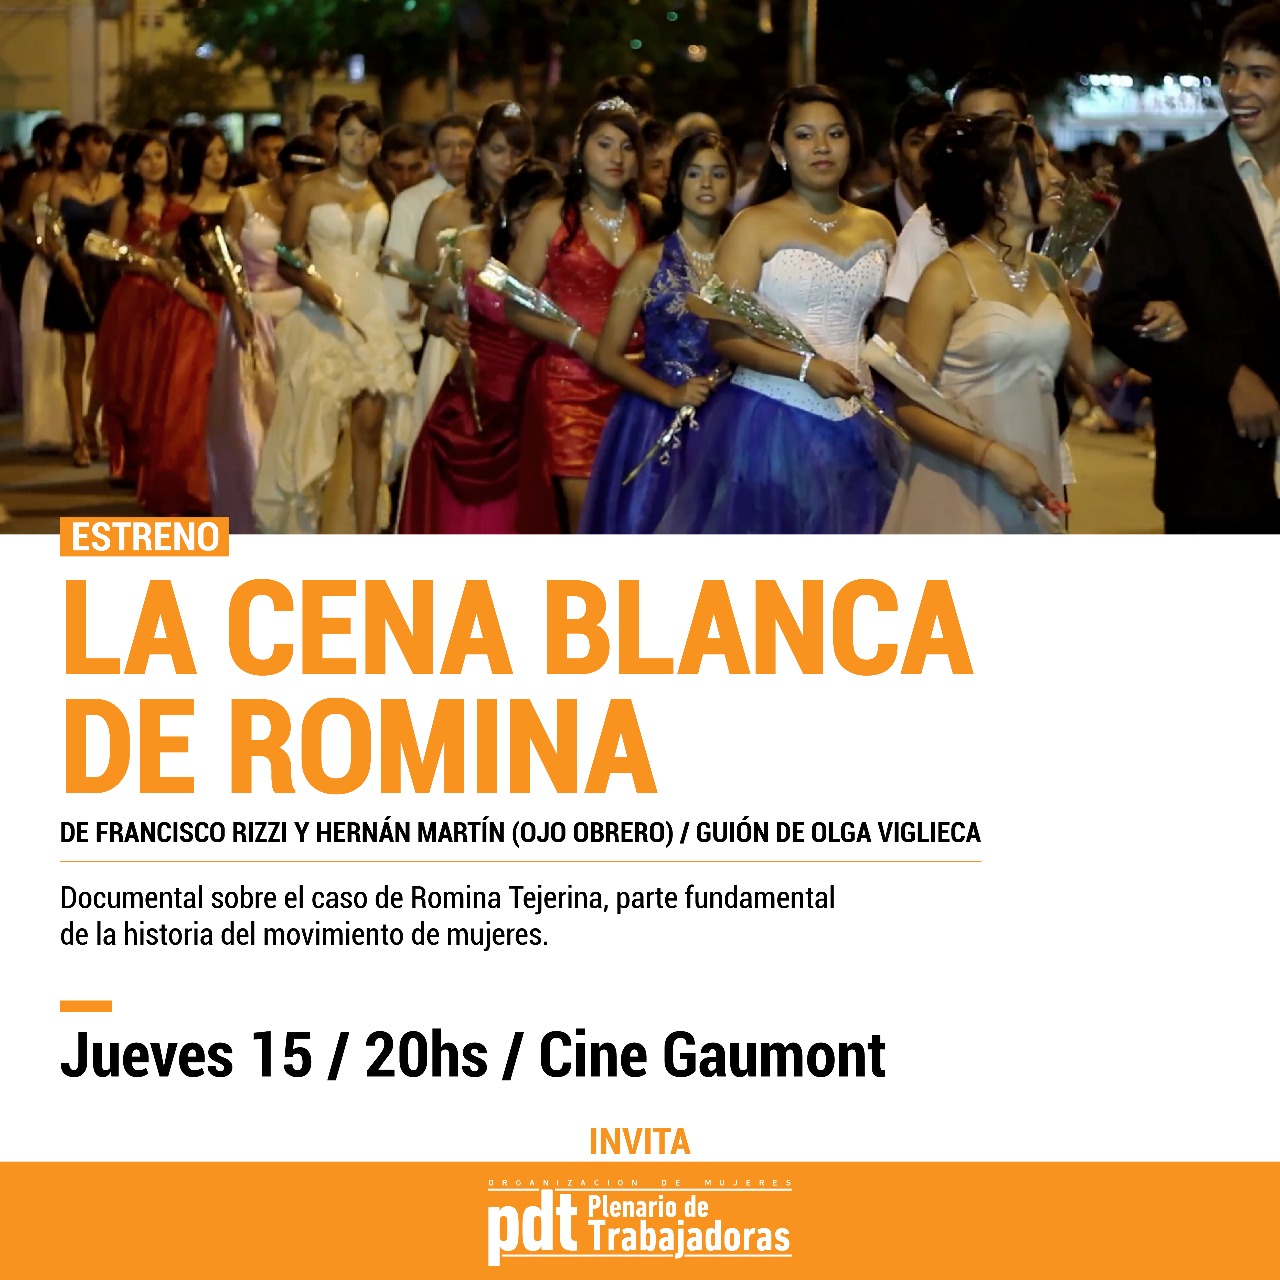 El Plenario de Trabajadoras presente en el estreno de “La cena blanca de Romina”